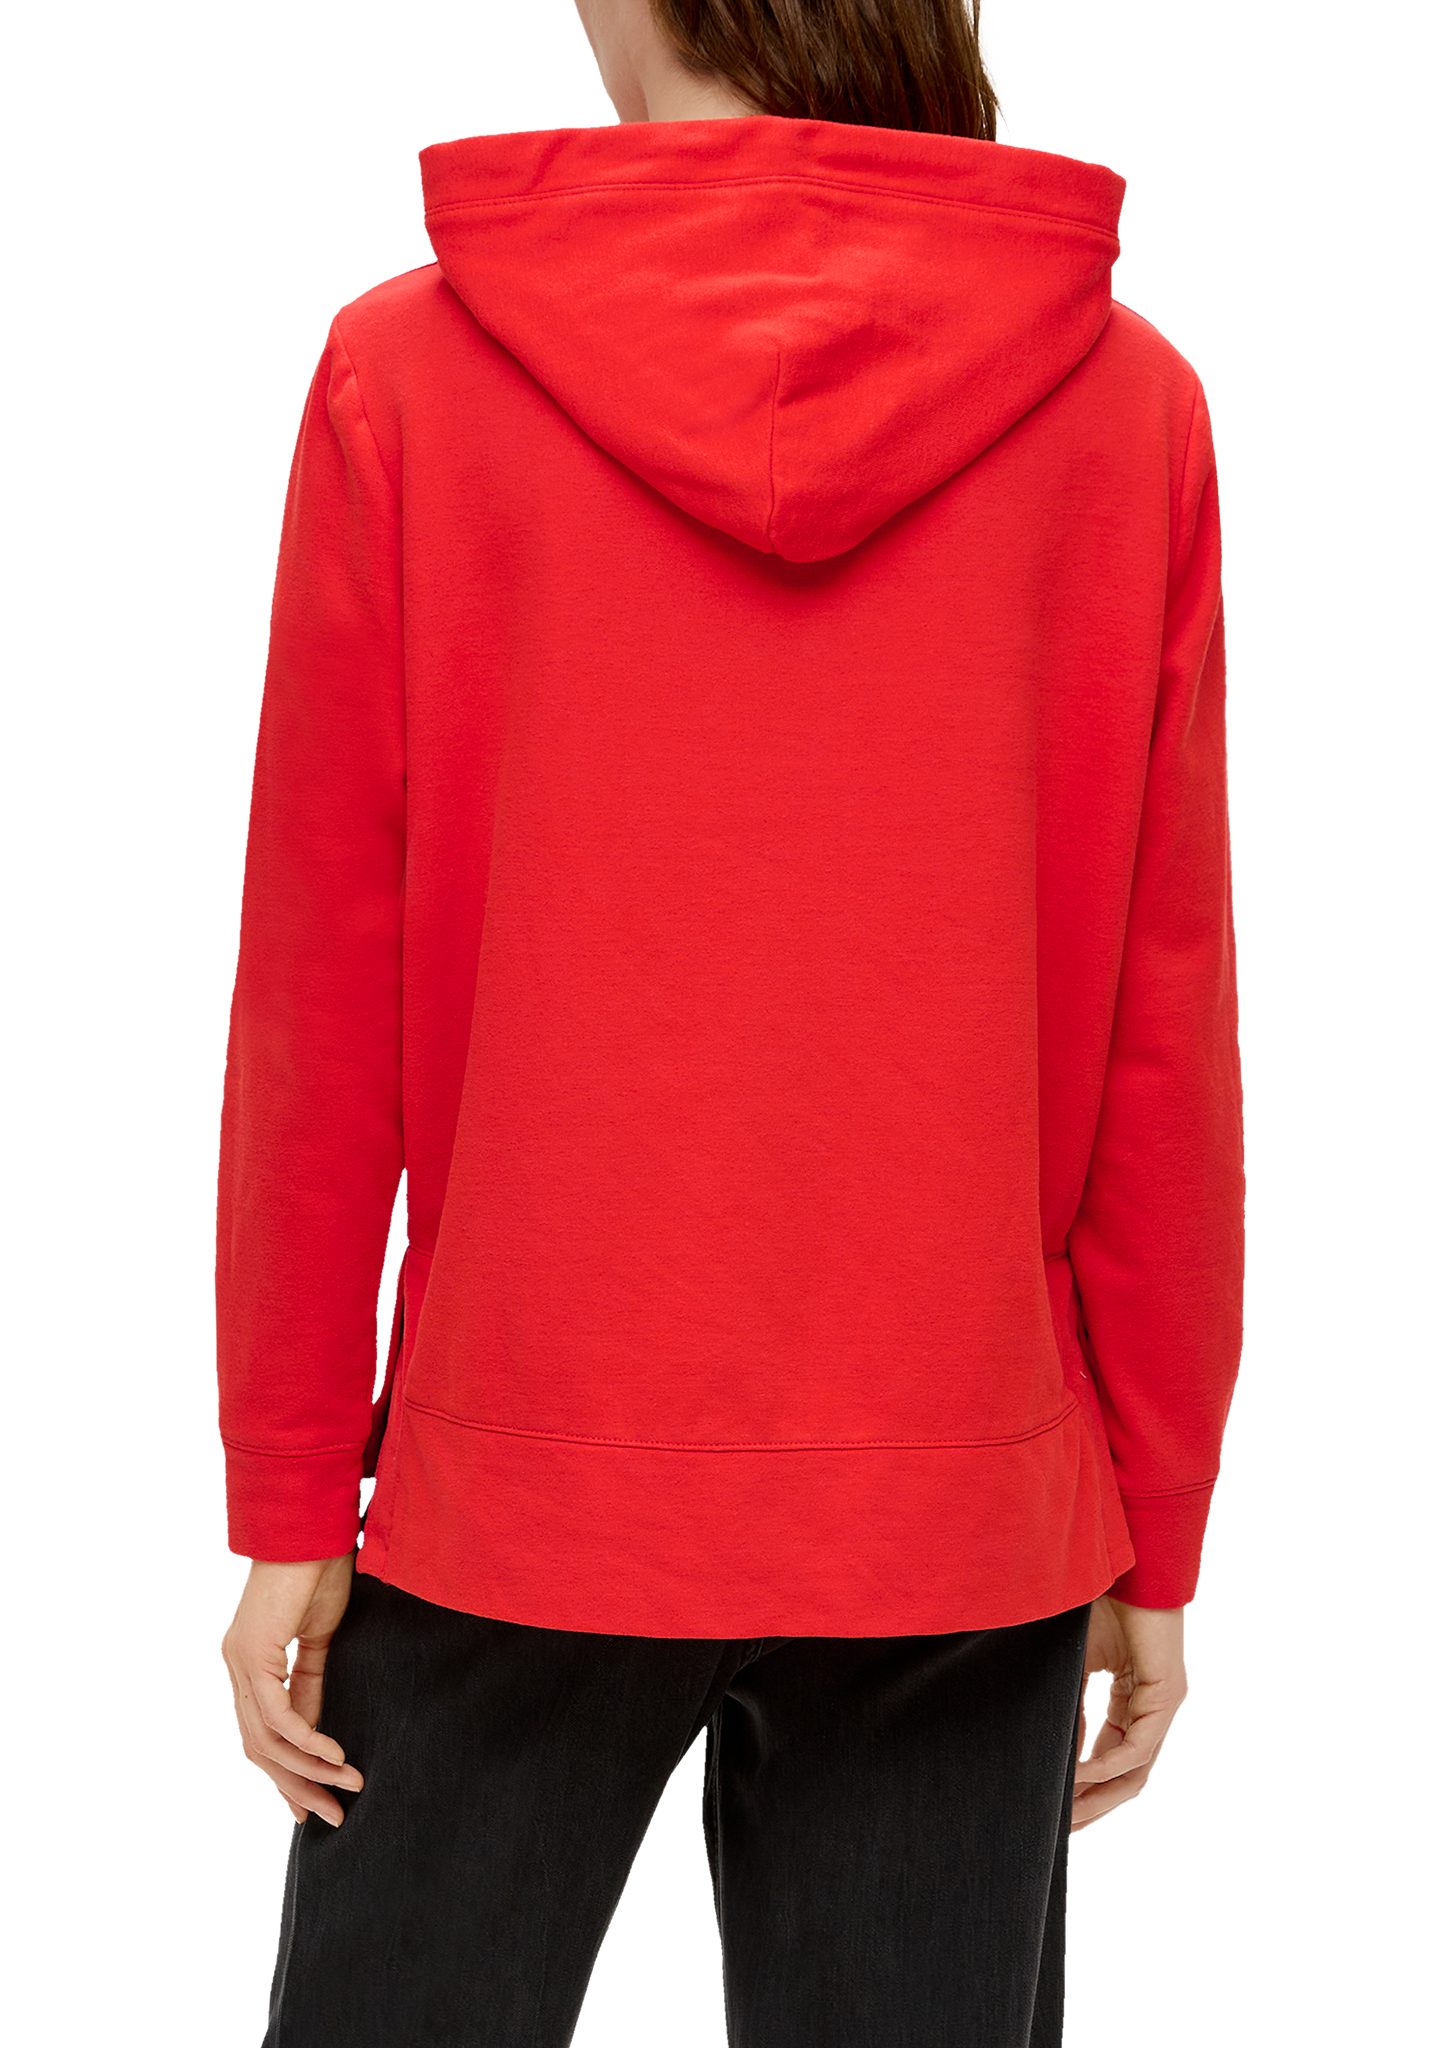 Sweatshirt Baumwollmix rot Kapuzen-Sweatshirt Durchzugkordel aus s.Oliver